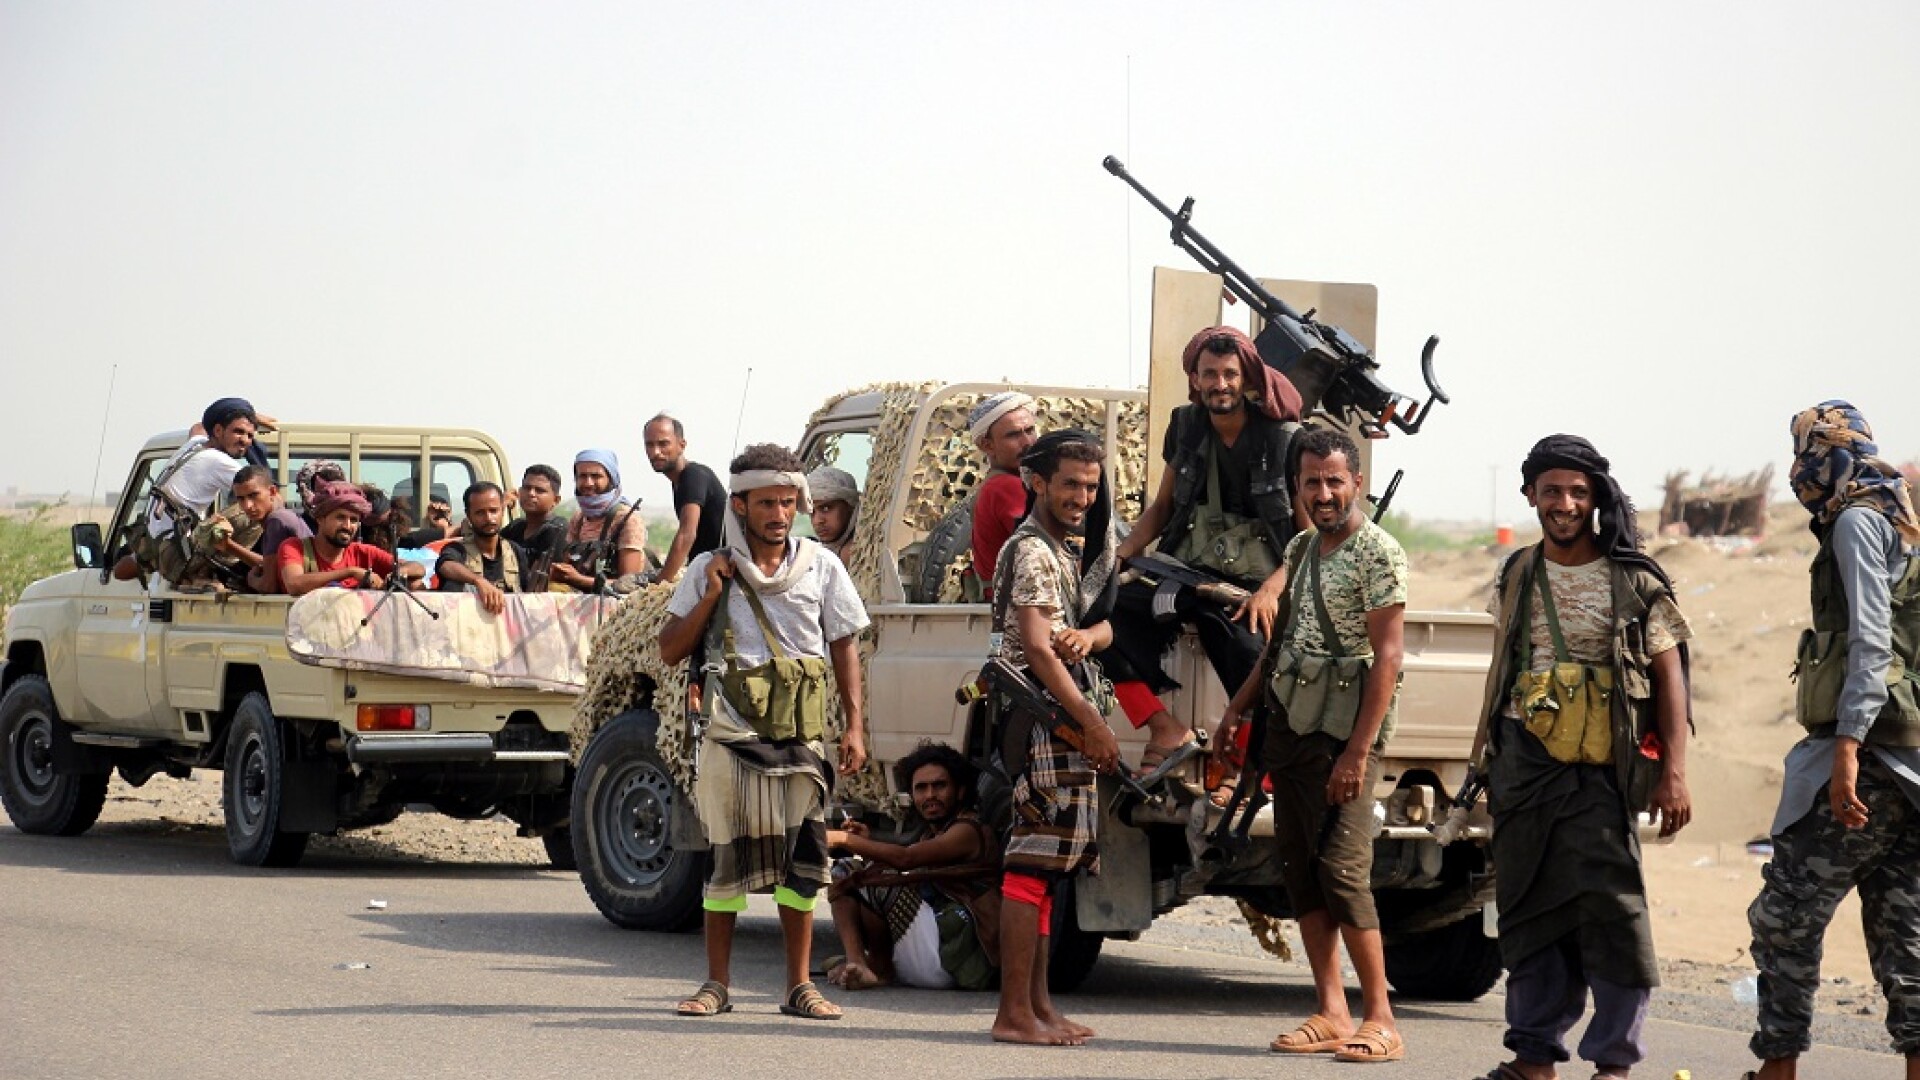 forte guvernamentale din Yemen